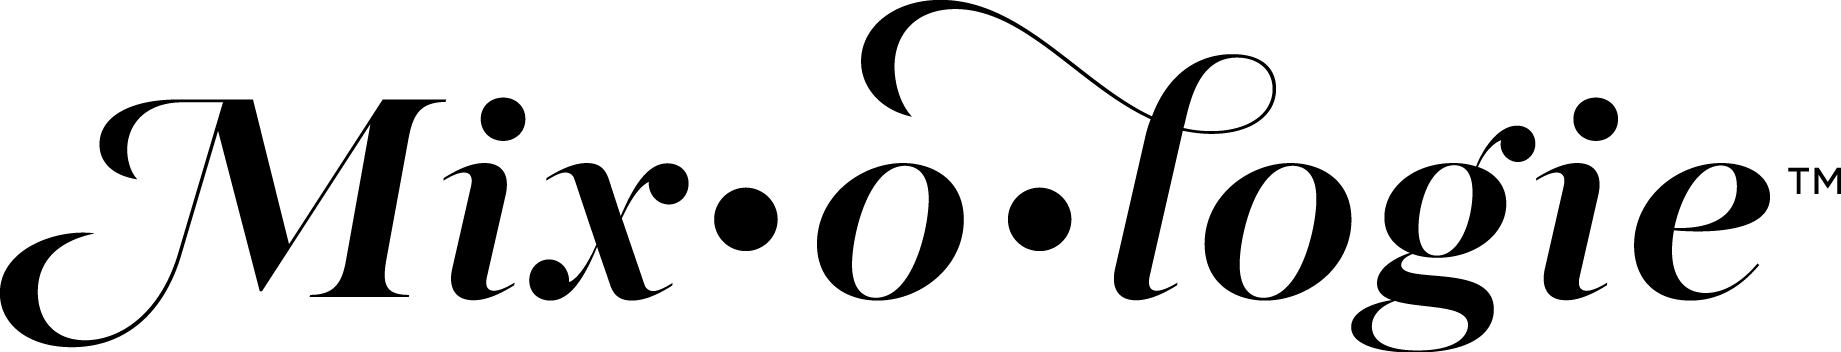 Danielle LJB - Mixologie-Logo-FINAL(01-04)-noTagline(white) (002).png